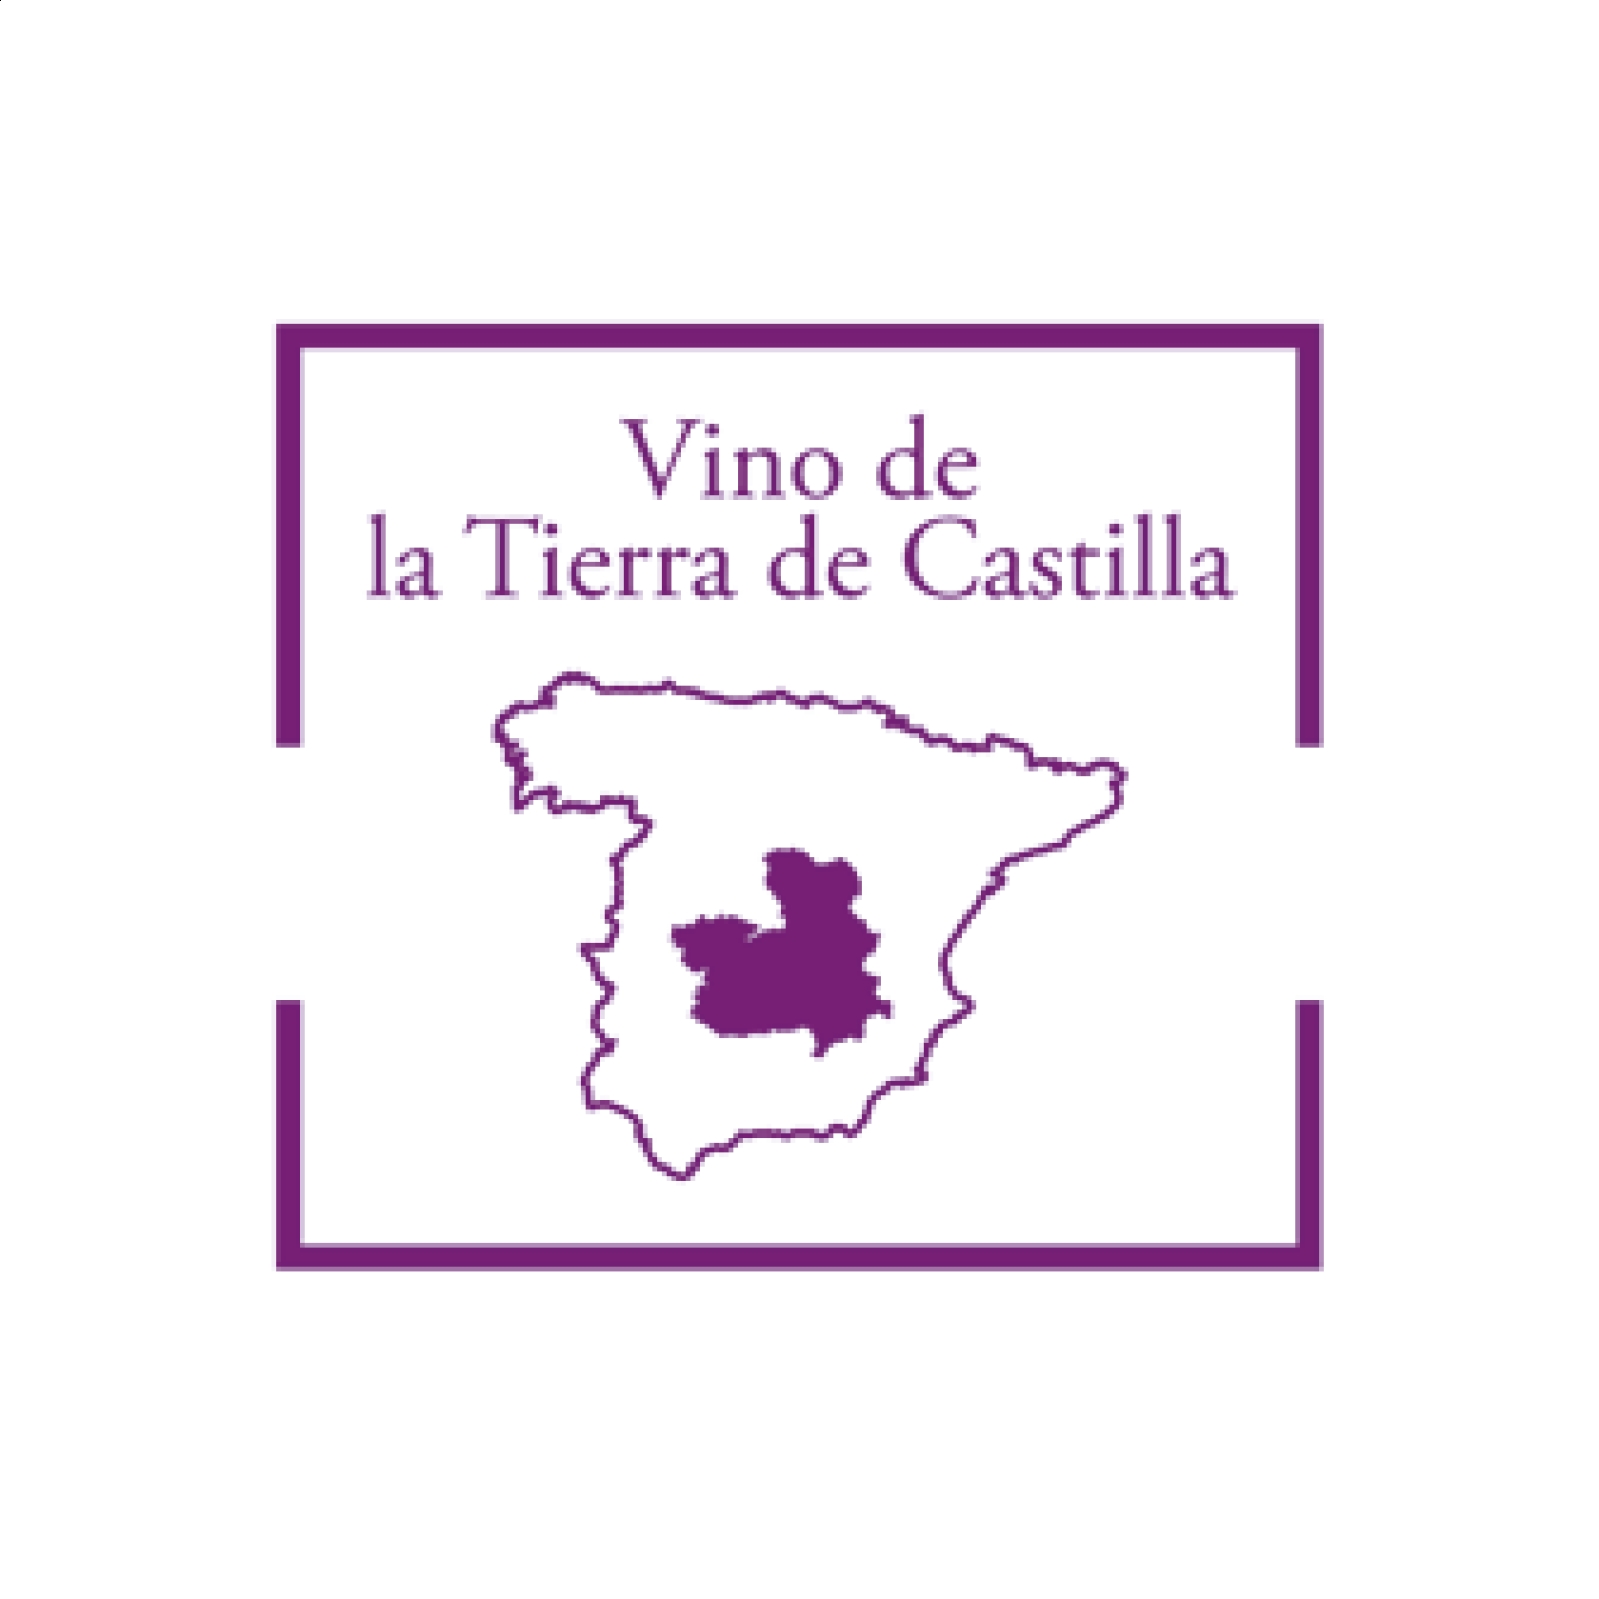 Arúspide Bodegas - Ágora Roble IGP Vino de la Tierra de Castilla 75cl, 6uds